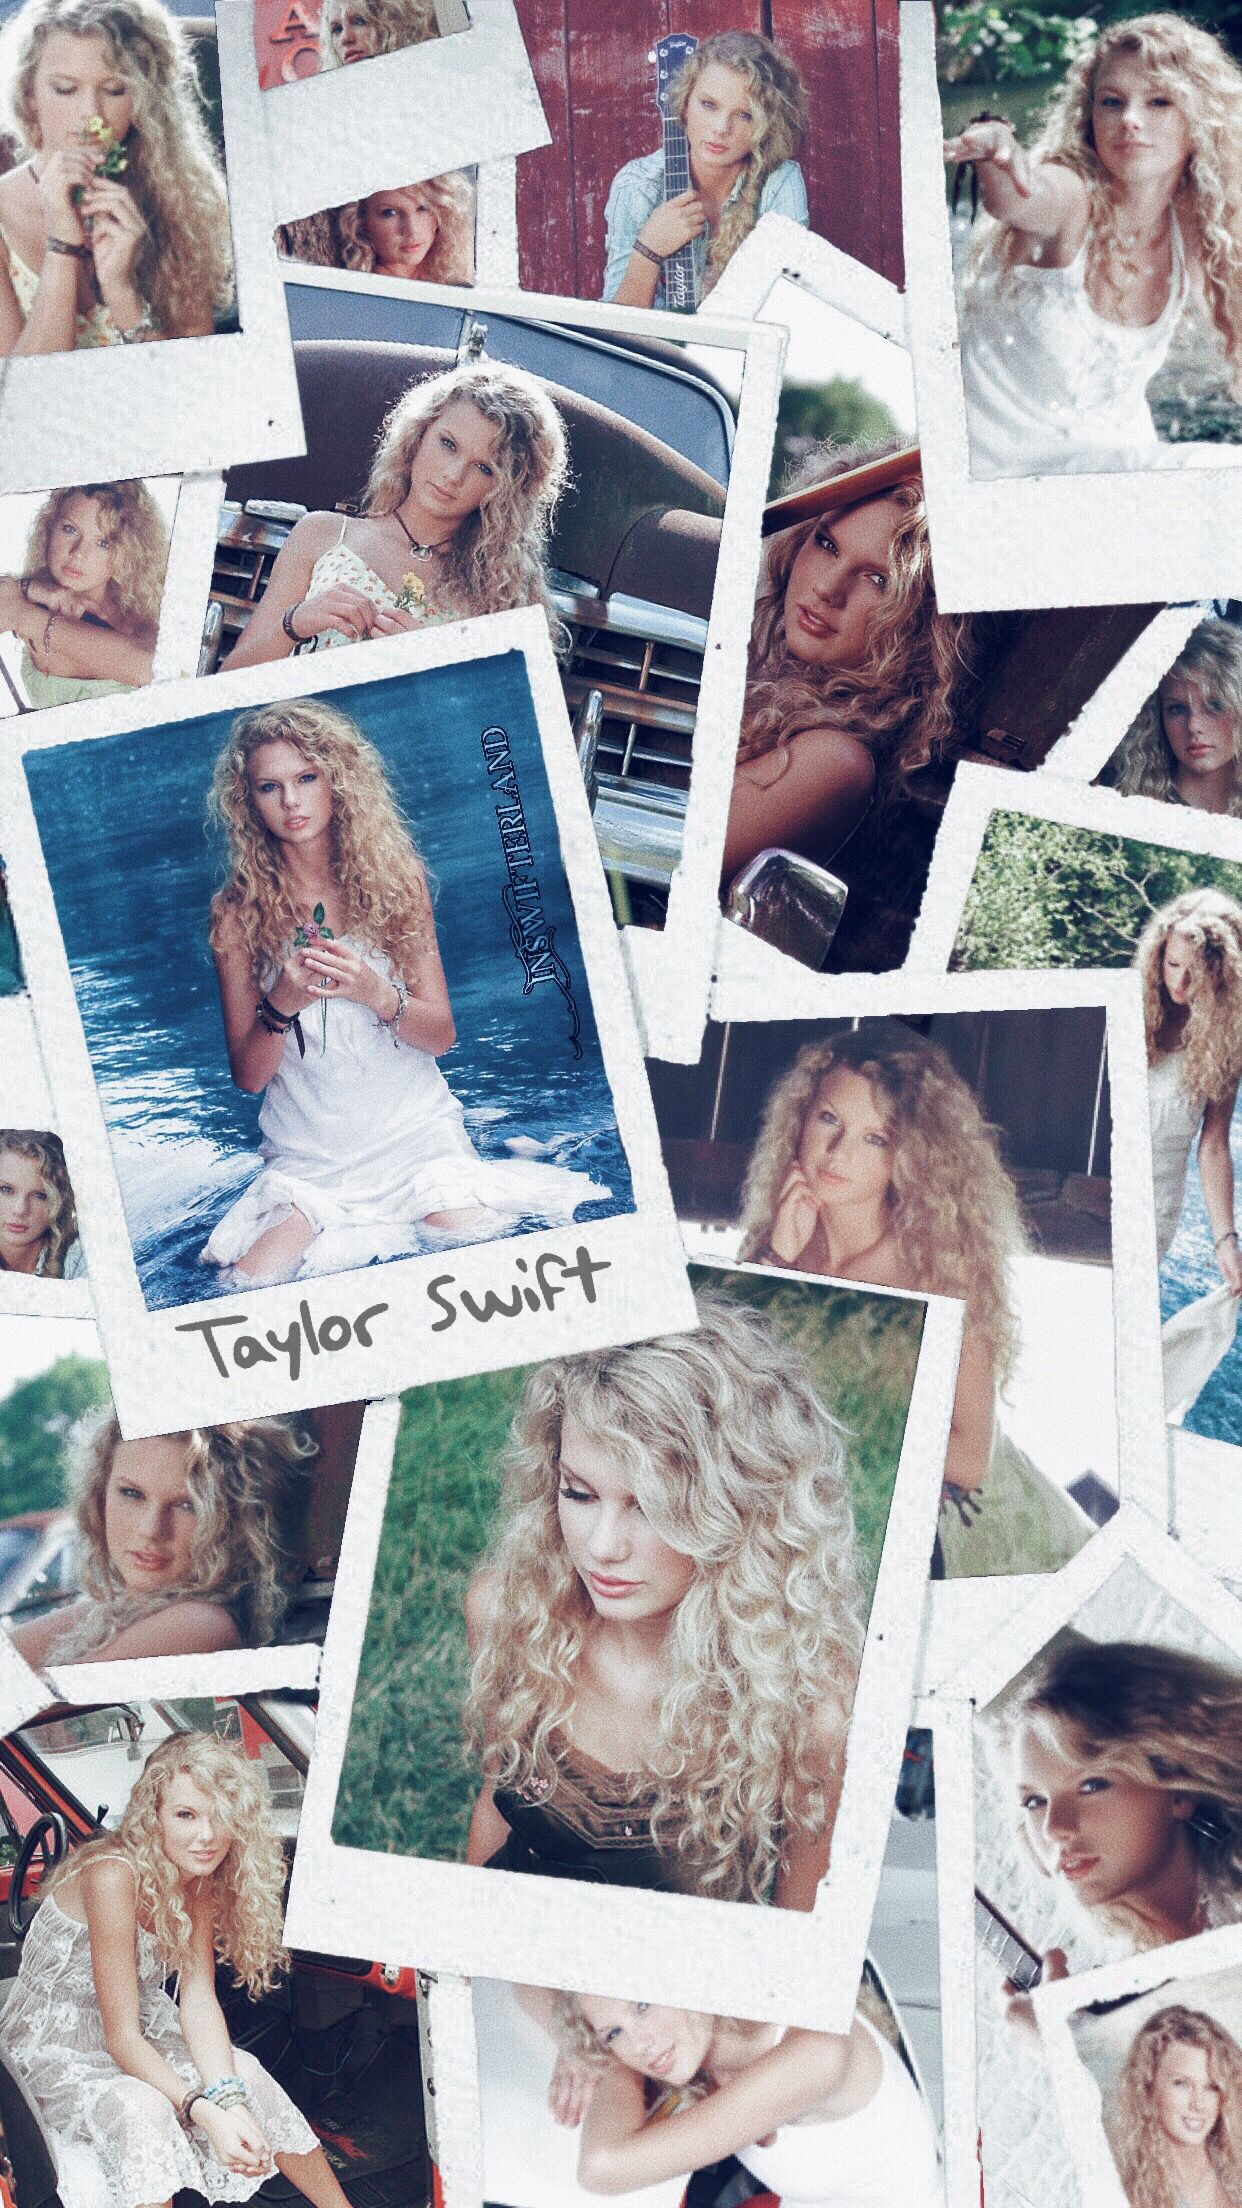 Taylor Swift Wallpaper. Taylor swift wallpaper, Taylor swift picture, Taylor swift album